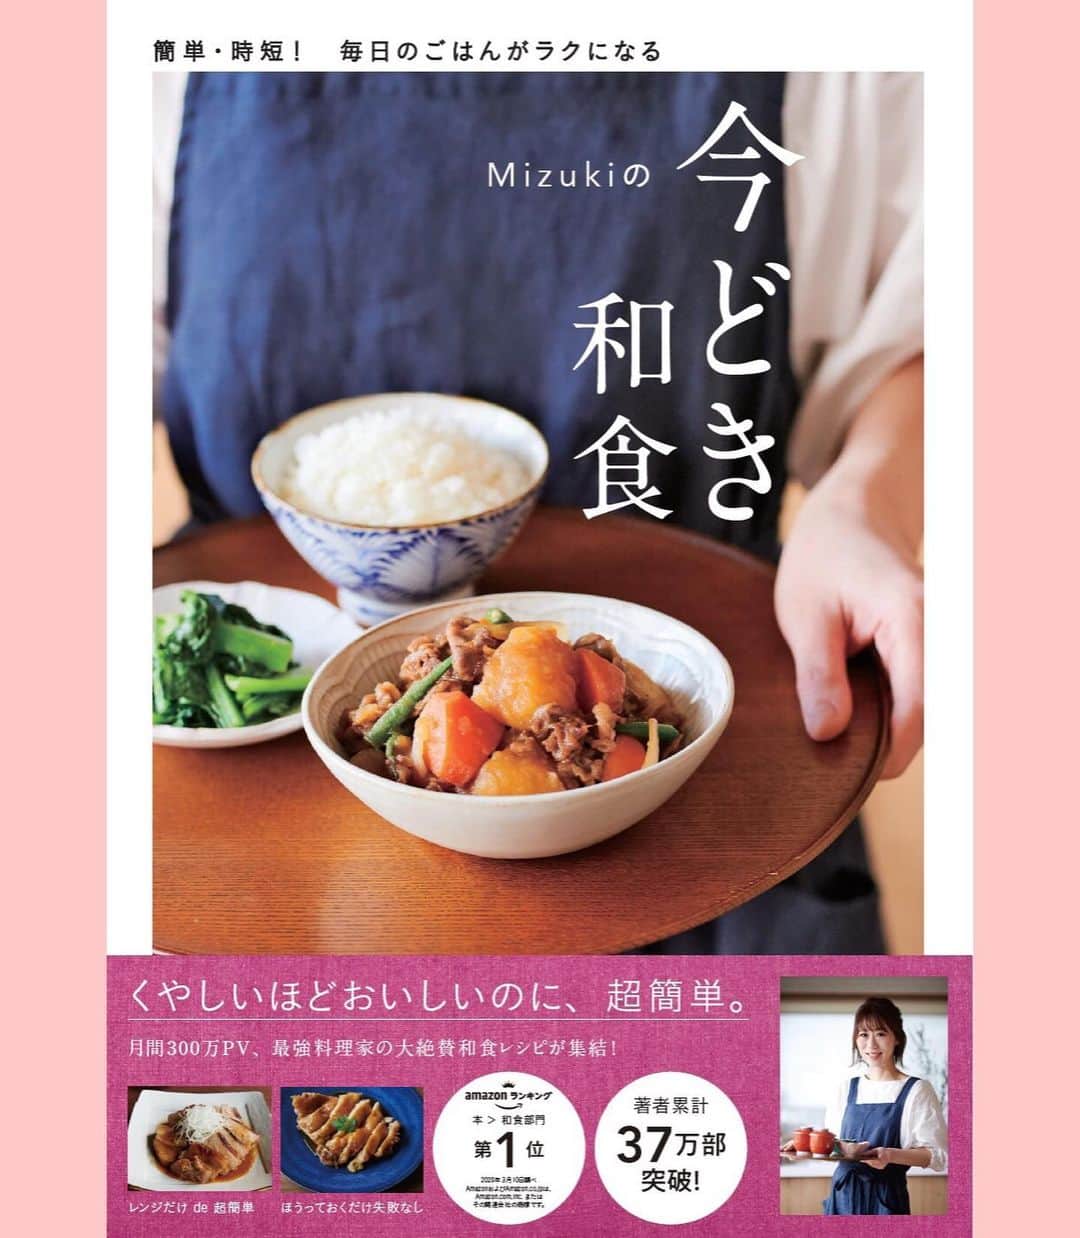 Mizuki【料理ブロガー・簡単レシピ】さんのインスタグラム写真 - (Mizuki【料理ブロガー・簡単レシピ】Instagram)「・﻿ 【レシピ】ーーーーーーーーーーーーーーー ﻿ ♡ごはんがすすむ♡新じゃがのそぼろ煮♡﻿ ーーーーーーーーーーーーーーーーーーーー﻿ ﻿ ﻿ おはようございます(*^^*)﻿ ﻿ 今日ご紹介させていただくのは﻿ 春のごちそう新じゃがおかず♩﻿ お手軽なひき肉と煮込んで﻿ あんかけ風に仕上げました♡﻿ 甘辛味でとってもごはんに合いますよ♫﻿ ﻿ 皮が薄い新じゃがは﻿ 皮ごと調理するのがおすすめです♡﻿ お鍋ひとつで簡単にできるので﻿ よかったらお試し下さいね(*^^*)﻿ ﻿ ﻿ ﻿ ーーーーーーーーーーーーーーーーーーーー﻿ 【2〜3人分】﻿ 新じゃが...小7個(400g)﻿ 鶏ひき肉...150g﻿ サラダ油...小1﻿ ●水...300ml﻿ ●みりん・醤油...各大2﻿ ●砂糖...大1﻿ ☆片栗粉...小2﻿ ☆水...大1﻿ (なくても)スナップエンドウ...適量﻿ ﻿ 1.じゃがいもは皮ごと綺麗に洗う(大きいものは4cm大に切る)。☆を混ぜ合わせて水溶き片栗粉を作っておく。﻿ 2.サラダ油を中火で熱した鍋でひき肉を炒める。ひき肉の色が変わったらじゃがいもも加えて更に2分炒める。﻿ 3.●を加えて混ぜ、煮立ったらアクを除く。落とし蓋をして弱めの中火で15〜20分煮る。﻿ 4.じゃがいもが柔らかくなったら火を弱め、水溶き片栗粉を加えてとろみをつける。器に盛り、(あれば)塩茹でしたスナップエンドウをトッピングする。﻿ ーーーーーーーーーーーーーーーーーーーー﻿ ﻿ ﻿ ﻿ 《ポイント》﻿ ♦︎大きい新じゃがは4cm大に切って下さい♩切った場合は少し煮崩れやすくなるので、火加減を調節して下さいね☆﻿ ♦︎落し蓋はアルミホイルでOK！﻿ ♦︎煮汁の残り具合によって片栗粉の量は調節して下さい☆しっかりとろみをつけると食べやすいです♩﻿ ﻿ ﻿ ﻿ ﻿ ﻿ ﻿ ＿＿＿＿＿＿＿＿＿＿＿＿＿＿＿＿＿﻿ ＿＿＿＿＿＿＿＿＿＿＿＿＿＿＿＿＿﻿ 🎀発売中🎀﻿ 【#ホットケーキミックスのお菓子 】﻿ ﻿ 一冊まるっとホケミスイーツ♩﻿ 普段のおやつから﻿ 特別な日にも使えるレシピを﻿ この一冊に詰め込みました(*^^*)﻿ ホットケーキミックスを使えば﻿ 簡単に本格的なお菓子が作れますよ♡﻿ ﻿ 🔹ハイライト、ストーリーに﻿ リンクを貼っています🔹﻿ ＿＿＿＿＿＿＿＿＿＿＿＿＿＿＿＿＿﻿ ＿＿＿＿＿＿＿＿＿＿＿＿＿＿＿＿＿﻿ ﻿ ﻿ ﻿ ﻿ ﻿ ＿＿＿＿＿＿＿＿＿＿＿＿＿＿＿＿＿＿＿﻿ 📕\ \ 新刊発売中 / /📕﻿ 簡単・時短！ 毎日のごはんがラクになる﻿ ✨🦋 【 #Mizukiの今どき和食 】🦋✨﻿ ＿＿＿＿＿＿＿＿＿＿＿＿＿＿＿＿＿＿＿﻿ ﻿ なるべく少ない材料で﻿ 手間も時間も省きながら﻿ 簡単にできるおいしい和食レシピ♩﻿ 簡単に失敗なくマスターできる一冊で﻿ もっと気軽に、カジュアルに﻿ 和食を楽しんで下さいね(*^^*)﻿ ﻿ ﻿ ーーー ⭐️PART.1 メインおかず ⭐️ーーー﻿ 素材別にレシピをご紹介しています♩﻿ 和食の定番から新定番まで﻿ どれも押さえておきたいメニューばかり。﻿ 肉じゃがはフライパンで！﻿ 焼き豚はレンジで！﻿ ぶり大根は切り身を使って手軽に作ります♩﻿ ﻿ ーーー ☘️PART.2 サブおかず ☘️ーーー﻿ 年中手に入るお手頃野菜と﻿ 乾物や大豆、こんにゃくなどを使った﻿ 副菜レシピをたっぷり掲載！！﻿ 普段SNSではメインおかずばかりなので﻿ 本では副菜にも力を入れています(*^^*)﻿ ﻿ ーーー 🌸PART.3 ごはんと汁物 🌸ーーー﻿ ささっと作れる丼と麺、﻿ みんなで食べたいいなり寿司や﻿ 手巻きごはんもご紹介！﻿ 複数の炊き込みごはんと﻿ 味噌汁&和風スープも盛りだくさん！﻿ ﻿ ﻿ 各レシピのポイントは﻿ 【写真付きで丁寧に解説】﻿ 副菜レシピもたっぷりなので﻿ 【メインページに副菜メモもつけました】﻿ ＊このメインにはこの副菜が合いますよ〜﻿ という献立の提案です(*^^*)﻿ 【その他コラムも充実】﻿ 全127品中ほぼ全て﻿ 【本だけのレシピです！】﻿ ﻿ ＿＿＿＿＿＿＿＿＿＿＿＿＿＿＿＿＿＿＿﻿ ﻿ ⭐️ストーリー、ハイライト、プロフ画面に﻿ 本のURLを貼らせていただいております♩﻿ →(@mizuki_31cafe )﻿ ﻿ ＿＿＿＿＿＿＿＿＿＿＿＿＿＿＿＿＿＿＿﻿ ﻿ ﻿ ﻿ ﻿ ﻿ ﻿ #新じゃが#じゃがいも#ひき肉#あんかけ#うちで過ごそう#おうち時間#Mizuki#簡単レシピ#時短レシピ#節約レシピ#料理#レシピ#フーディーテーブル#おうちごはん#おうちカフェ#デリスタグラマー#料理好きな人と繋がりたい#料理ブロガー#おうちごはんlover#マカロニメイト#foodpic#follow#cooking#recipe#lin_stagrammer#新じゃがのそぼろ煮m」4月10日 7時02分 - mizuki_31cafe